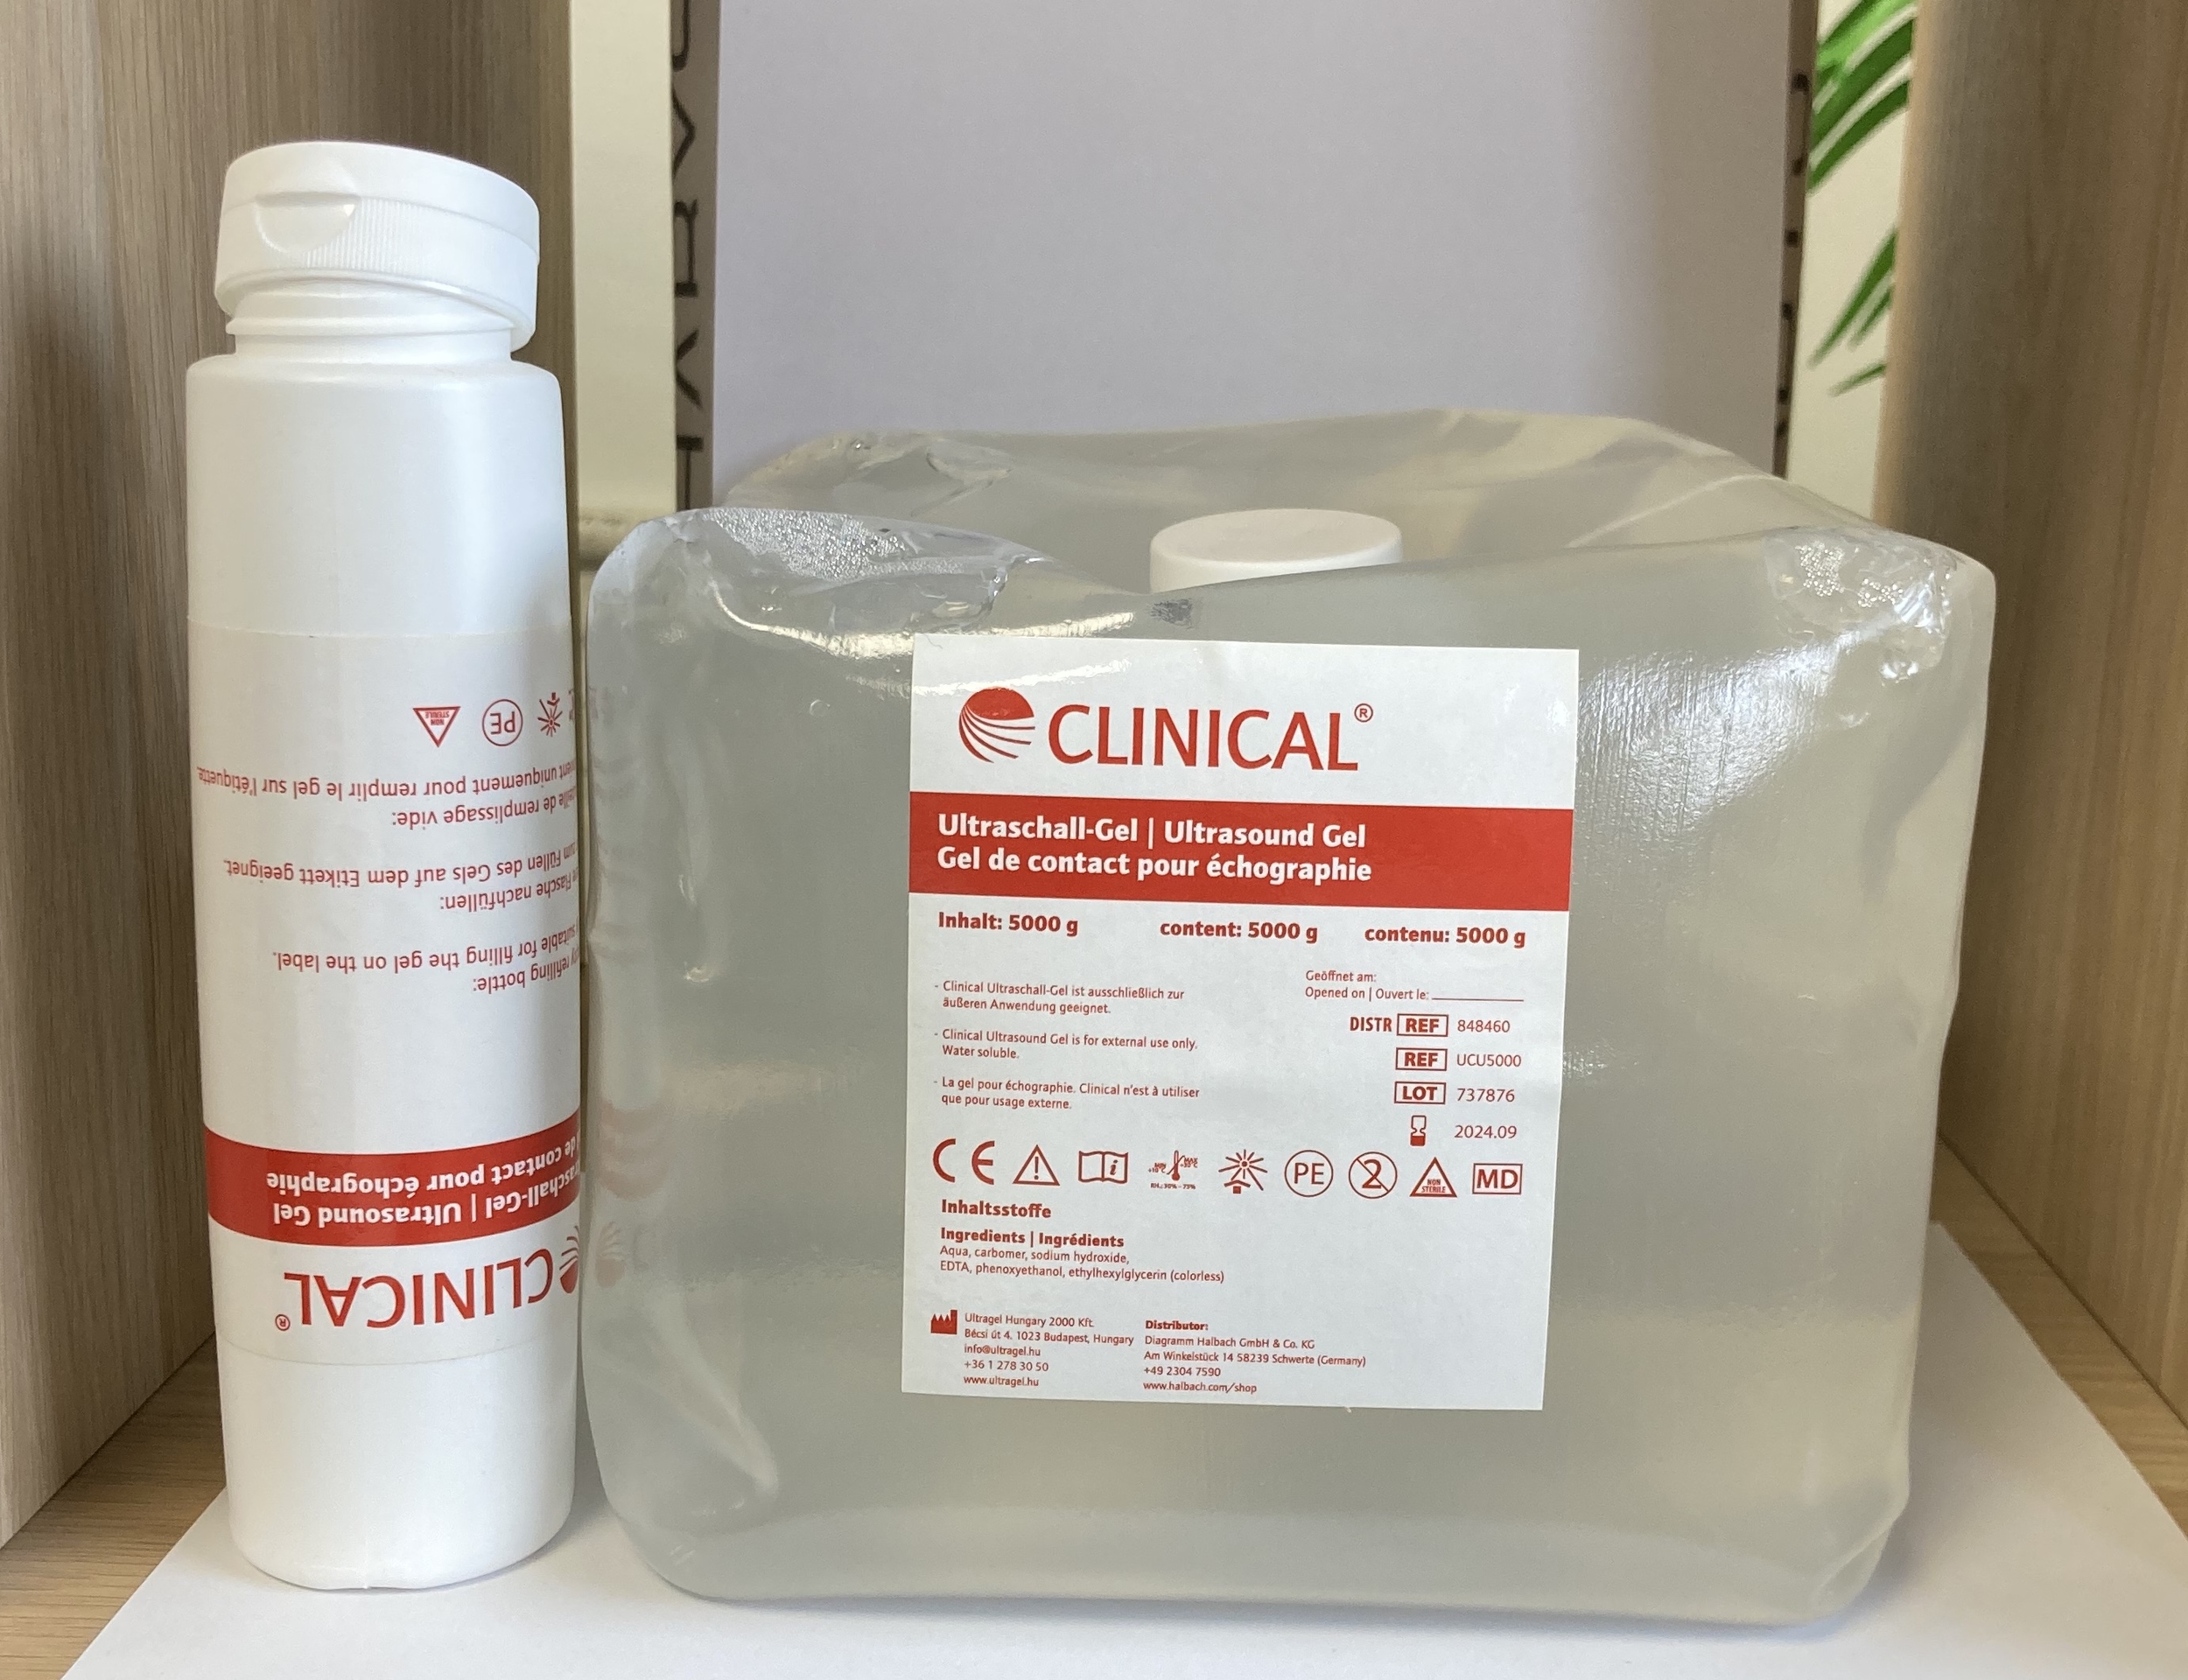 clinical gel de contact transparent cubi de 5 litres avec son flacon de 250 ml by tablelya image00005